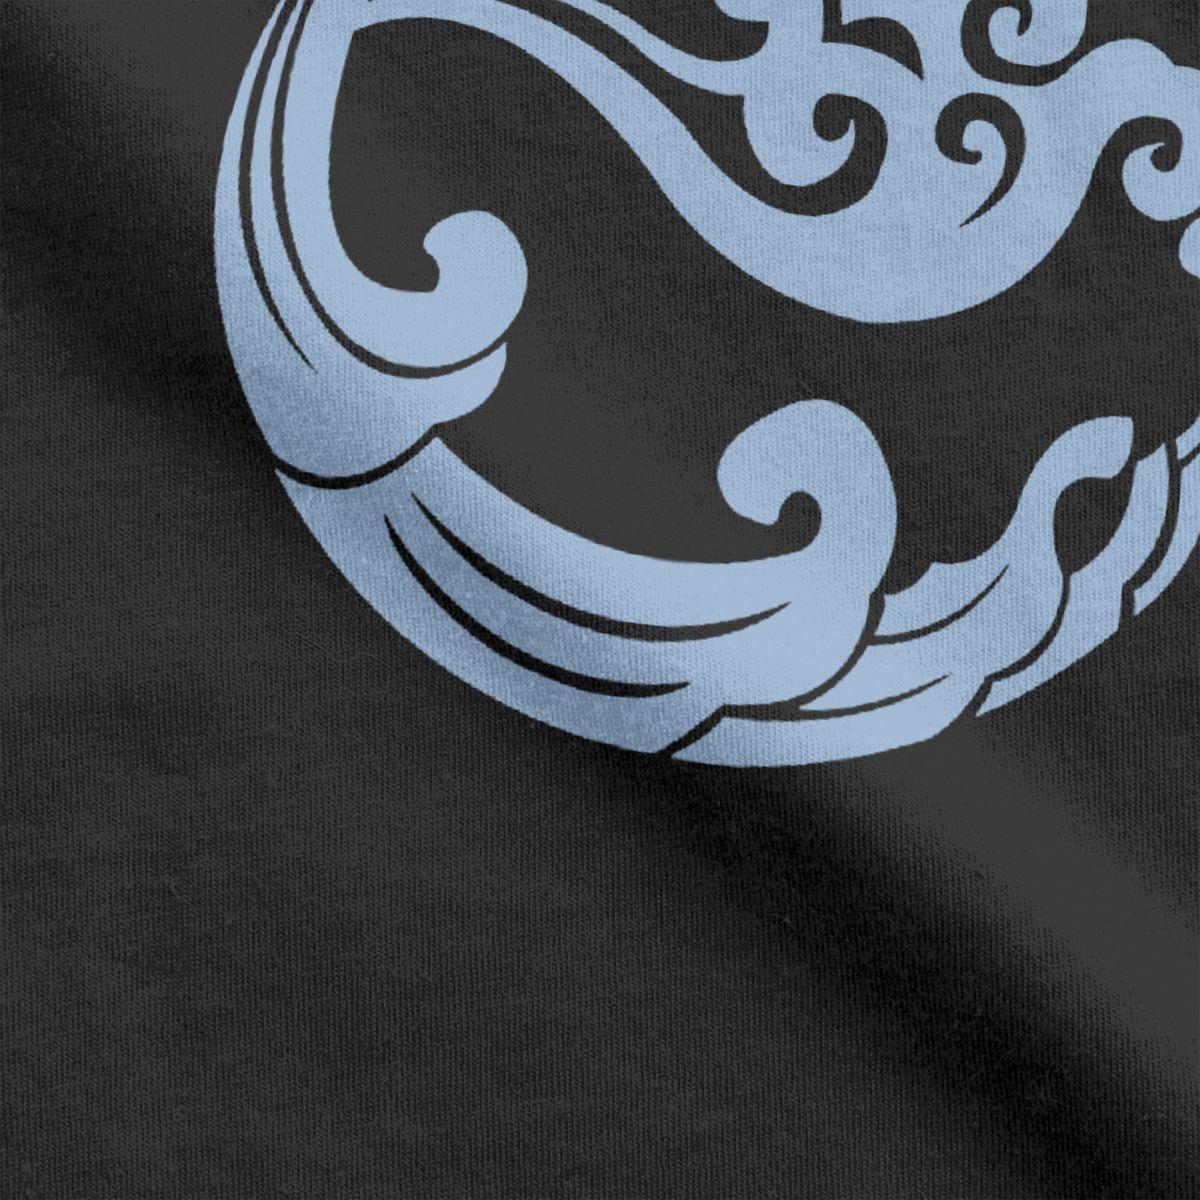 Изображение товара: Untamed Gusu Lan Sect Футболка мужская хлопковая 2020 модная футболка футболки с округлым вырезом Топы с короткими рукавами подарок на день рождения